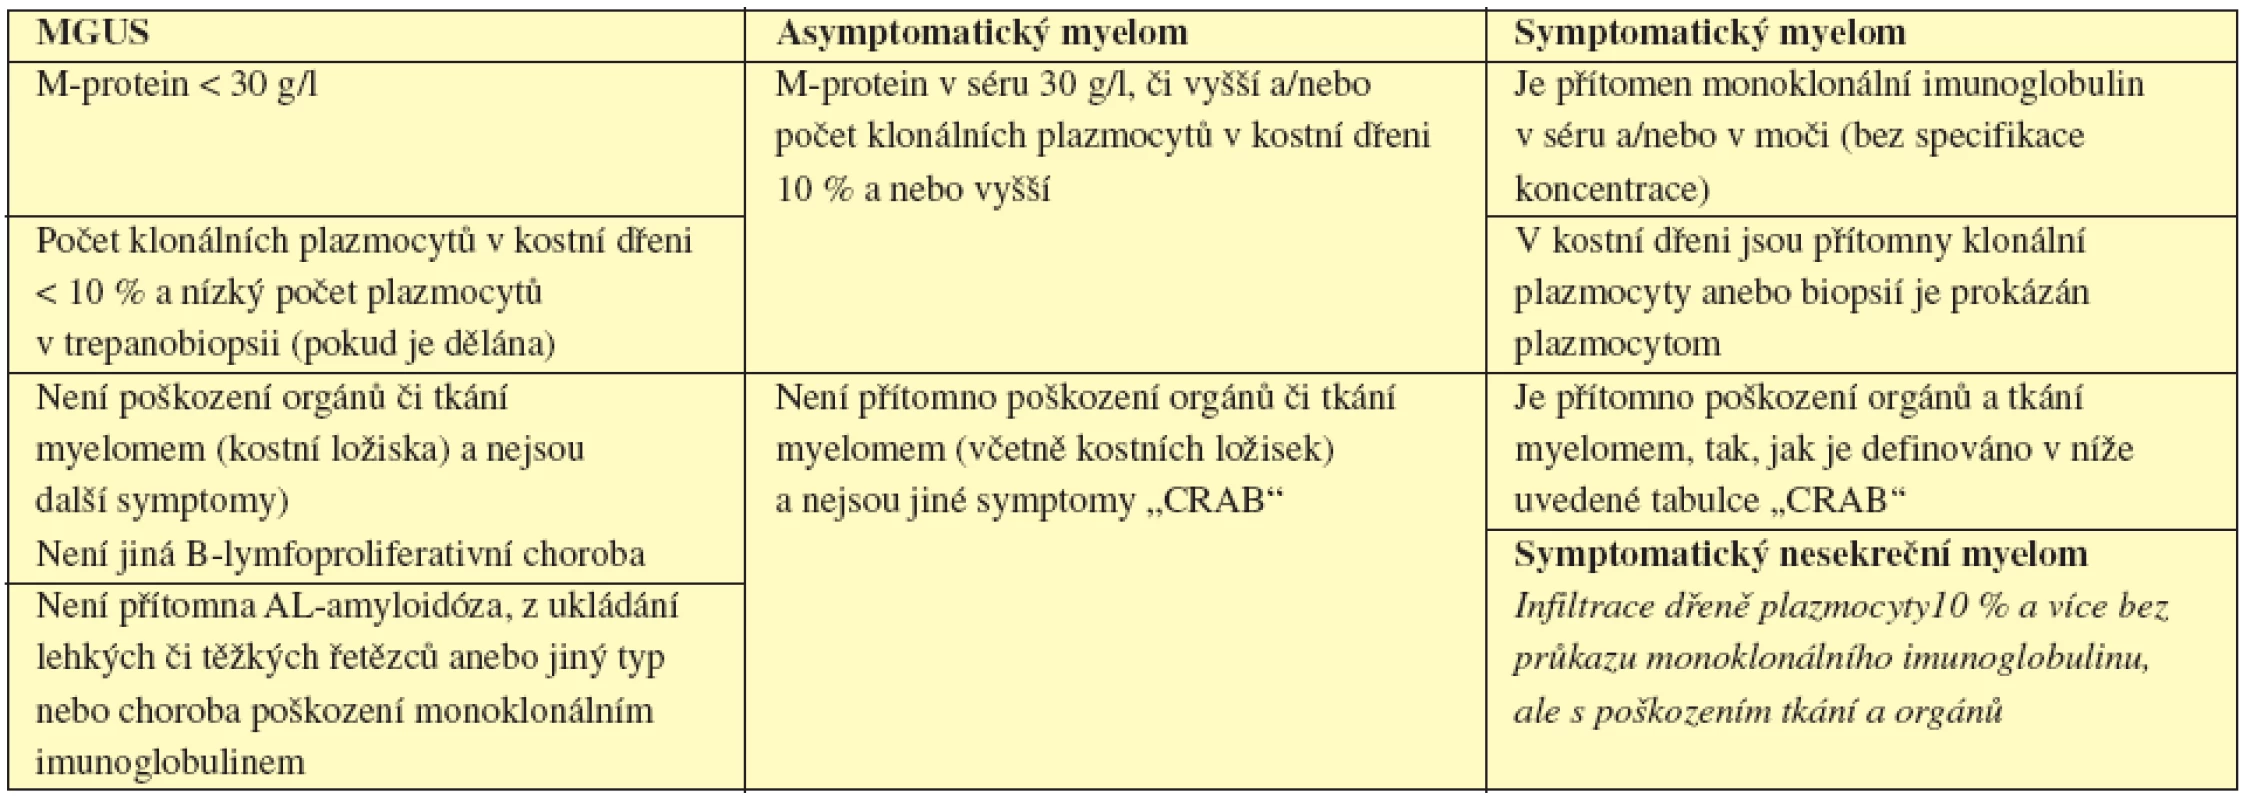 Srovnání kritéria MGUS, asyptomatického a symptomatického myelomu (International Myeloma Working Group, 2003).